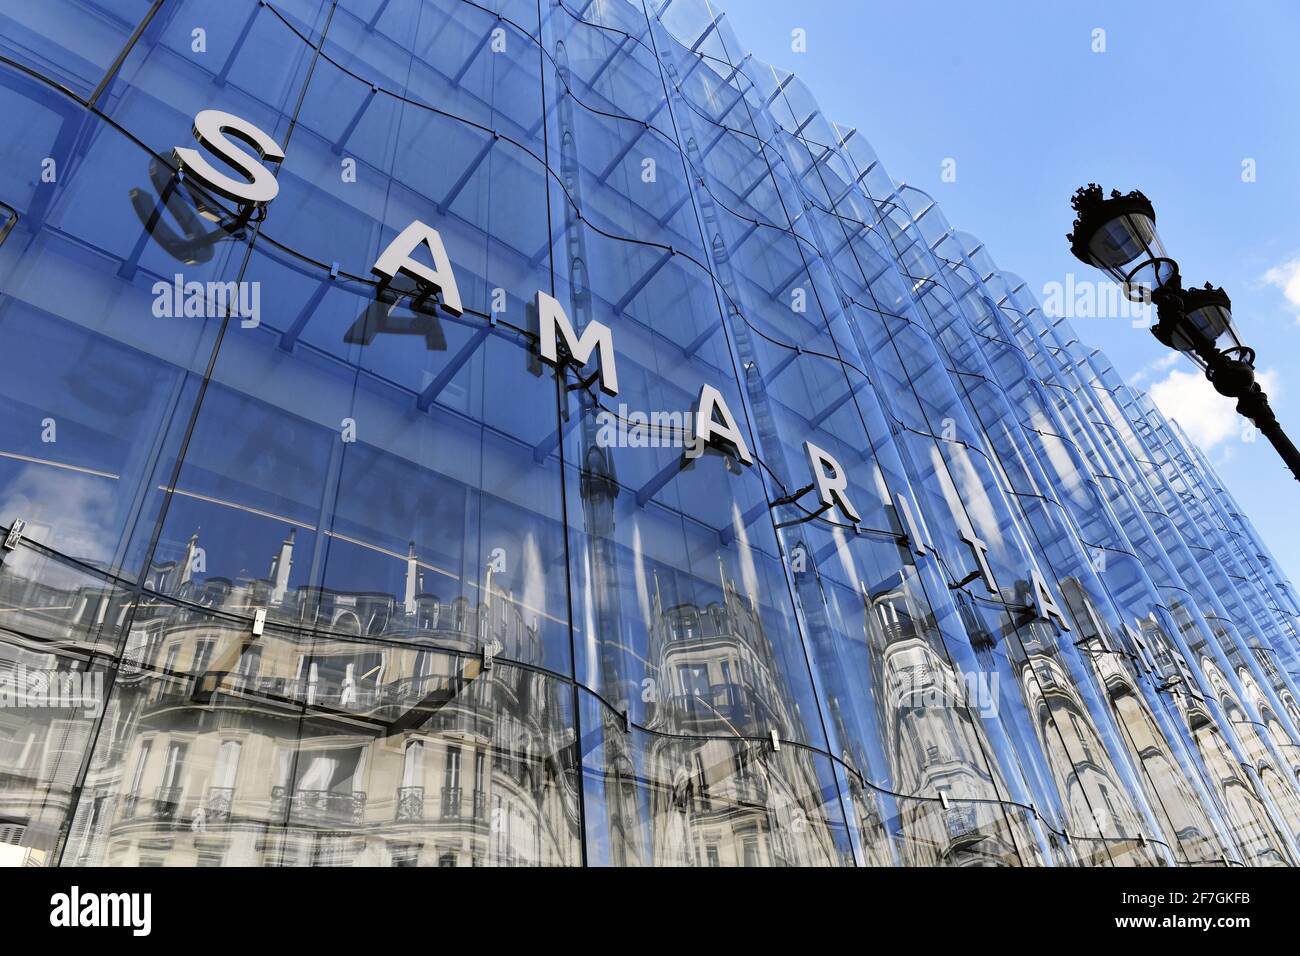 La Samaritaine Departement Store - LVMH - Paris - France Stock Photo